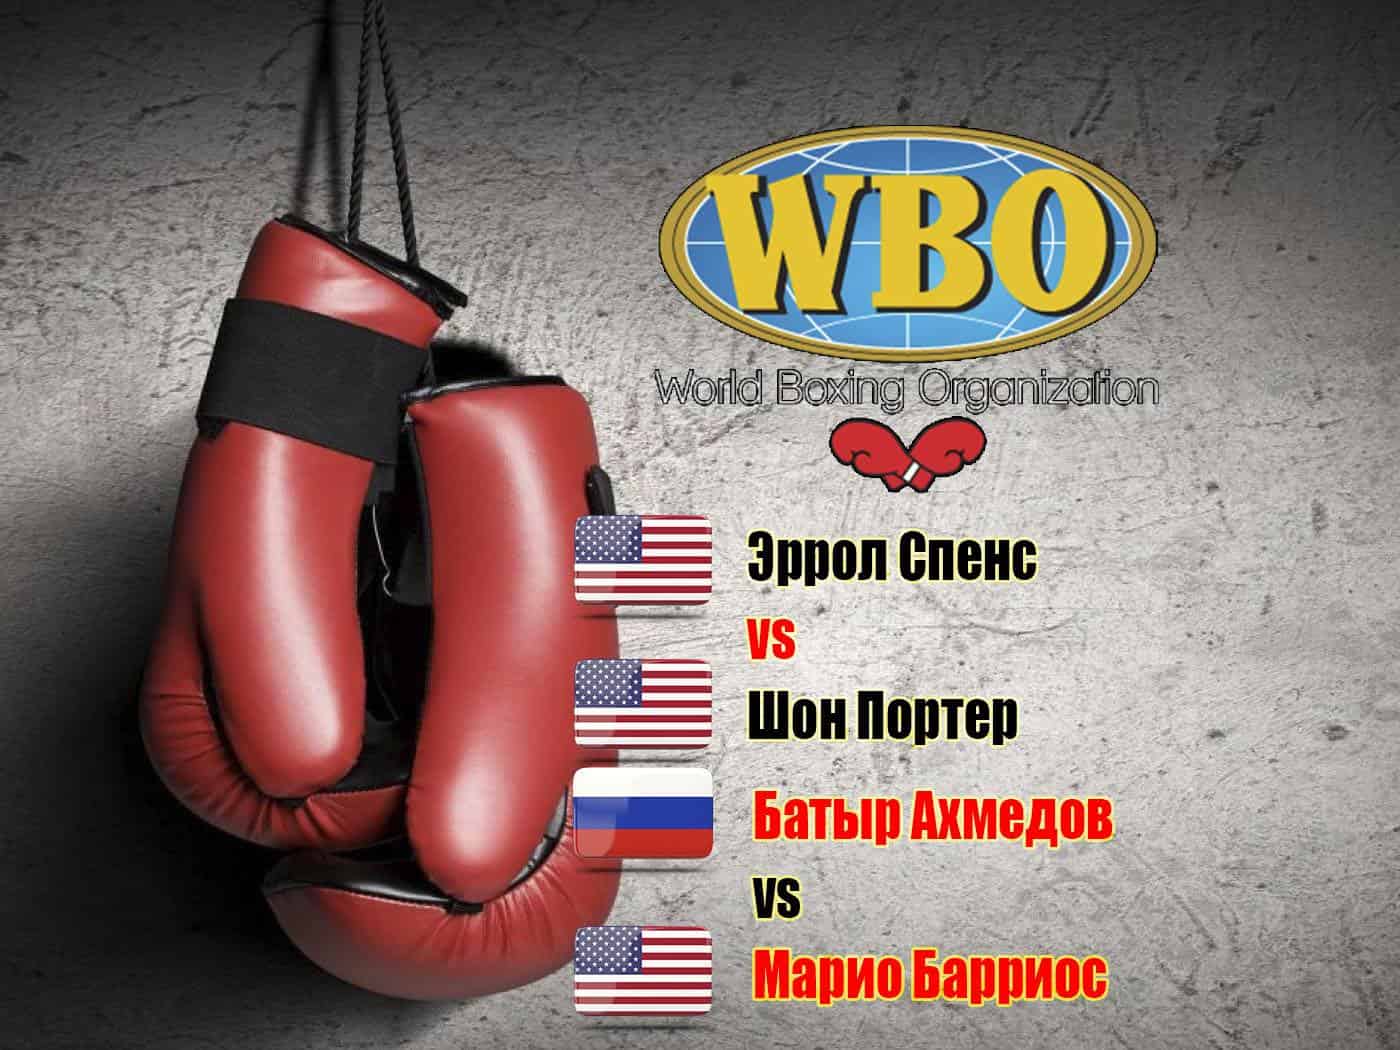 Профессиональный-бокс-Эррол-Спенс-Шон-Портер-Бой-за-титулы-чемпиона-мира-по-версиям-WBC-и-IBF-в-полусреднем-весе-Батыр-Ахмедо